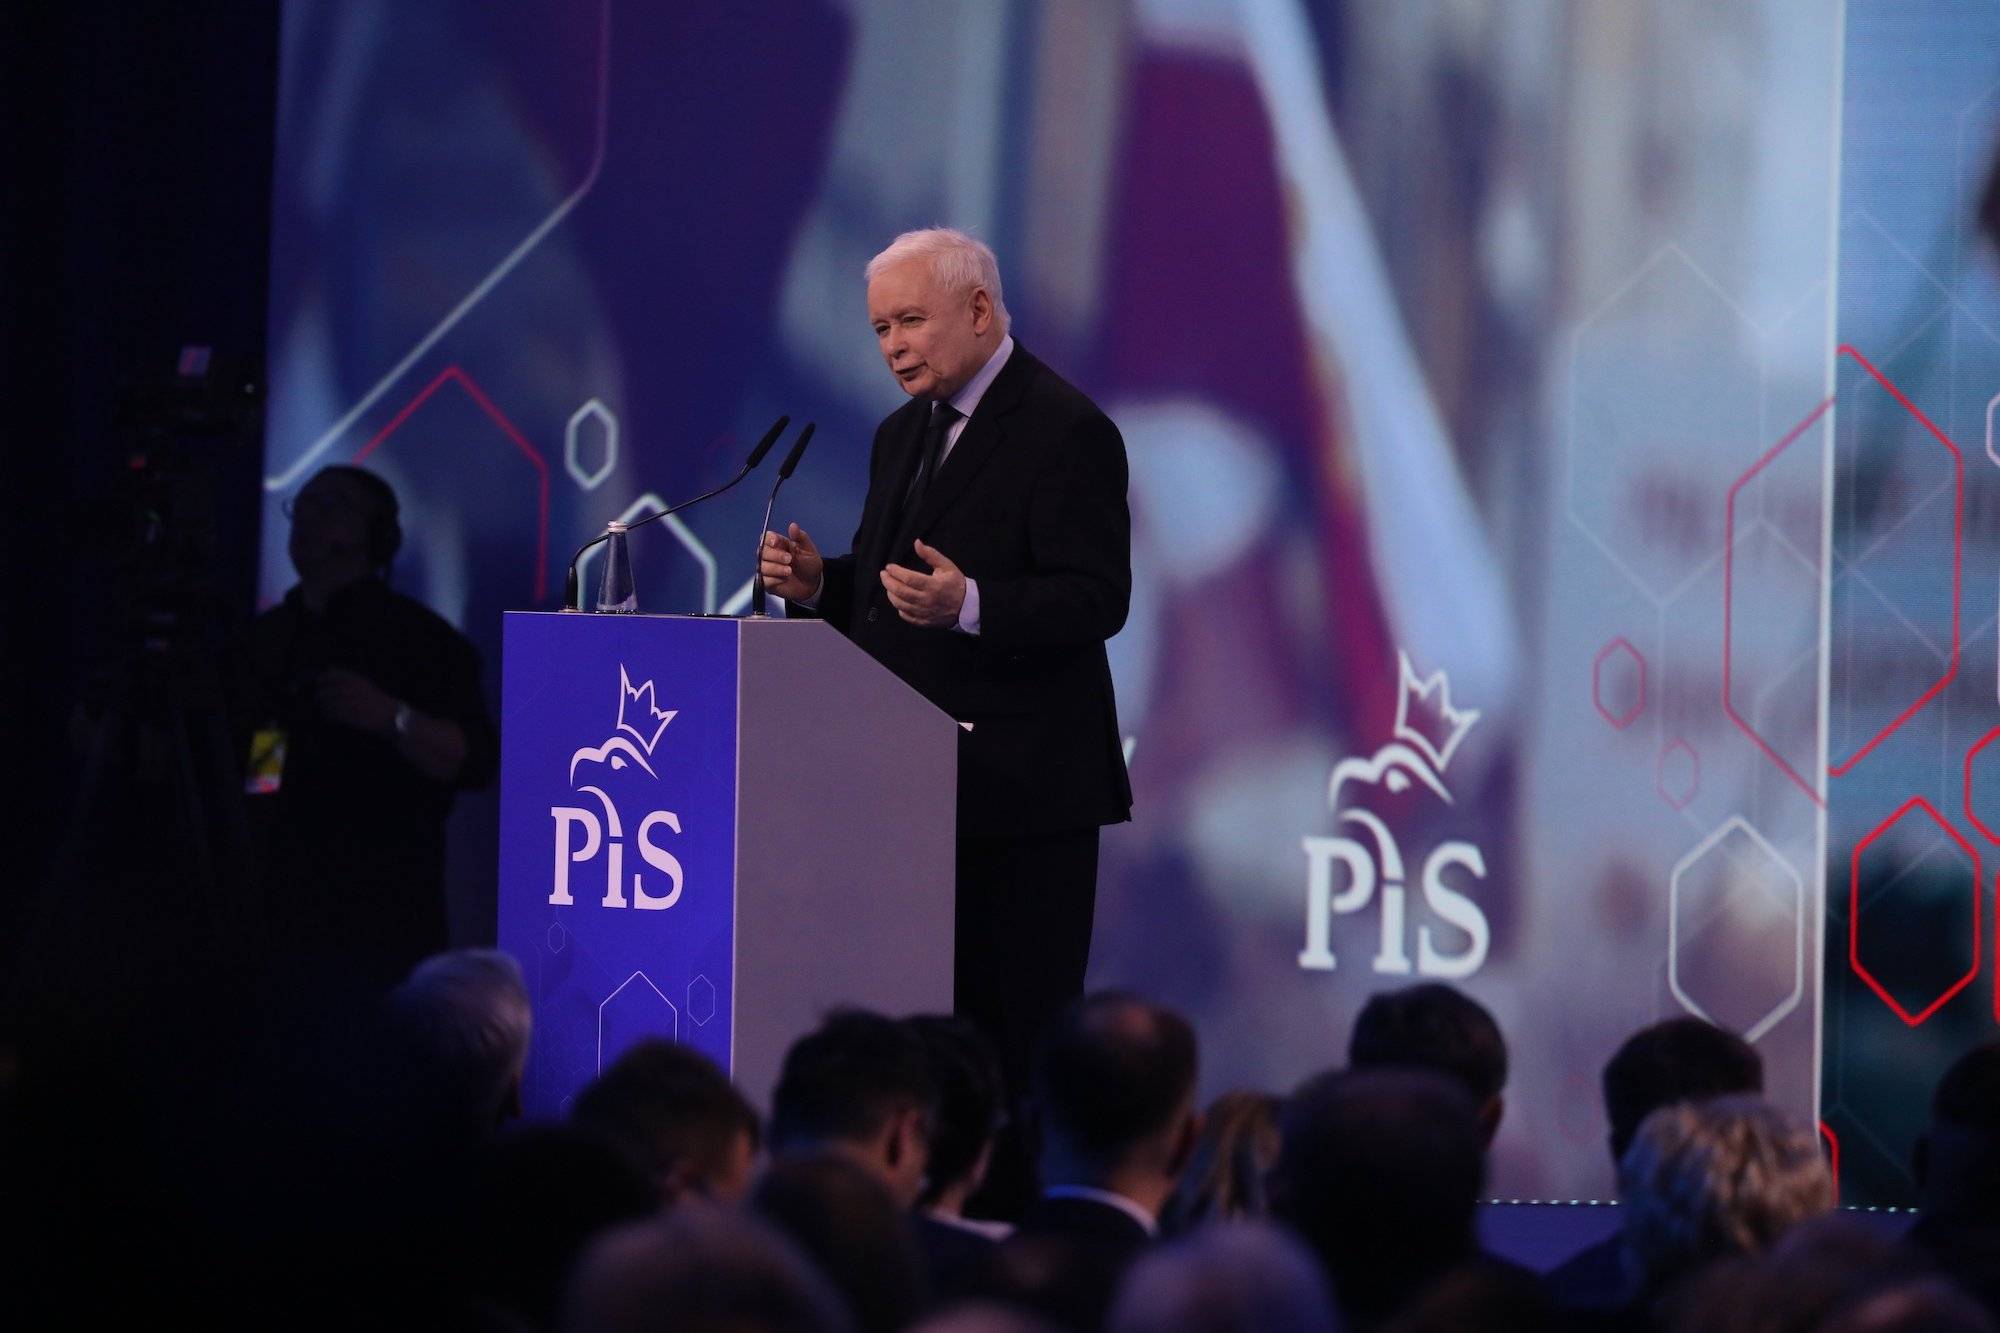 Jarosław Kaczyński podczas konwencji PiS w Warszawie. Stoi przy podium z logo PiS i przemawia do publiczności na tle dużego ledowego ekranu.